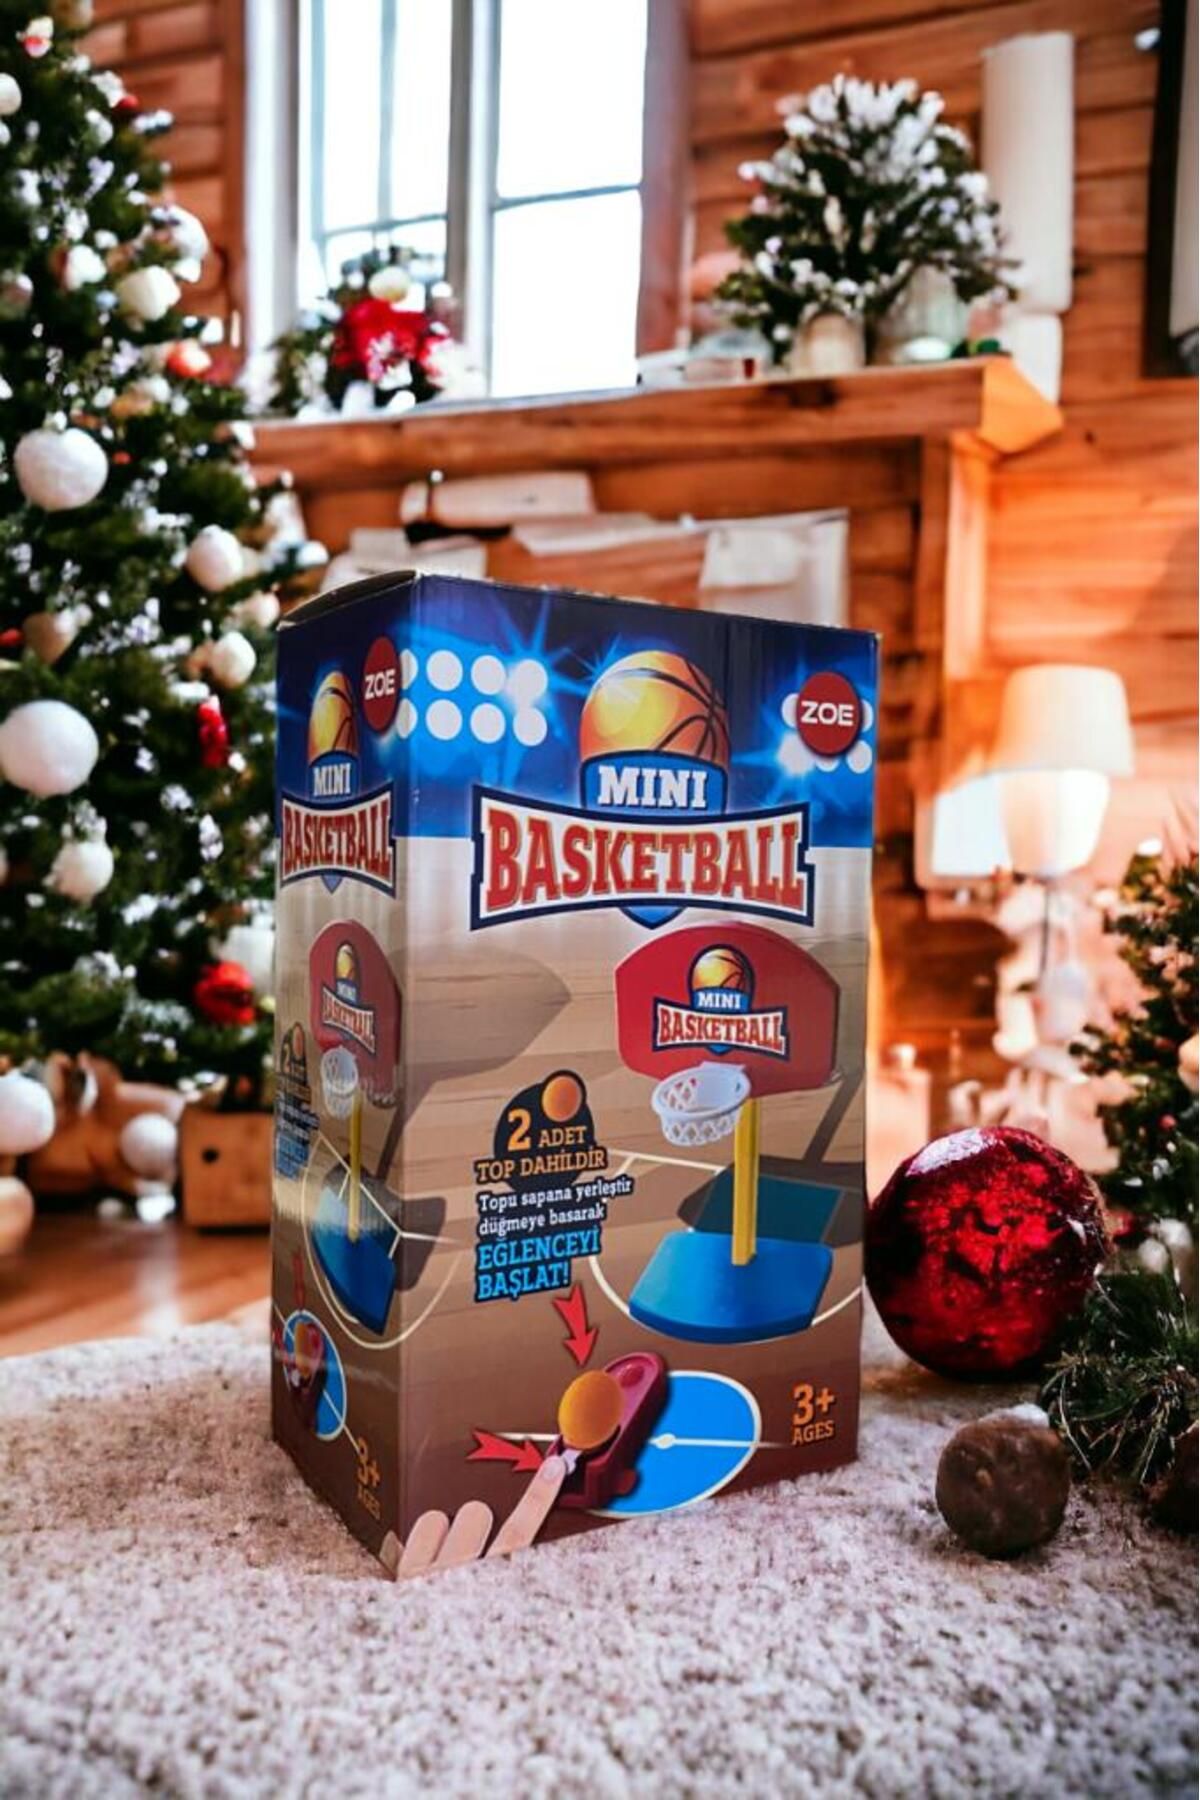 Bee Games Her Yaş Çocuk Için Mini Basketbol Oyunu Aile Oyunları Mükemmel Ve Eğlenceli Yılbaşı Hediyesi